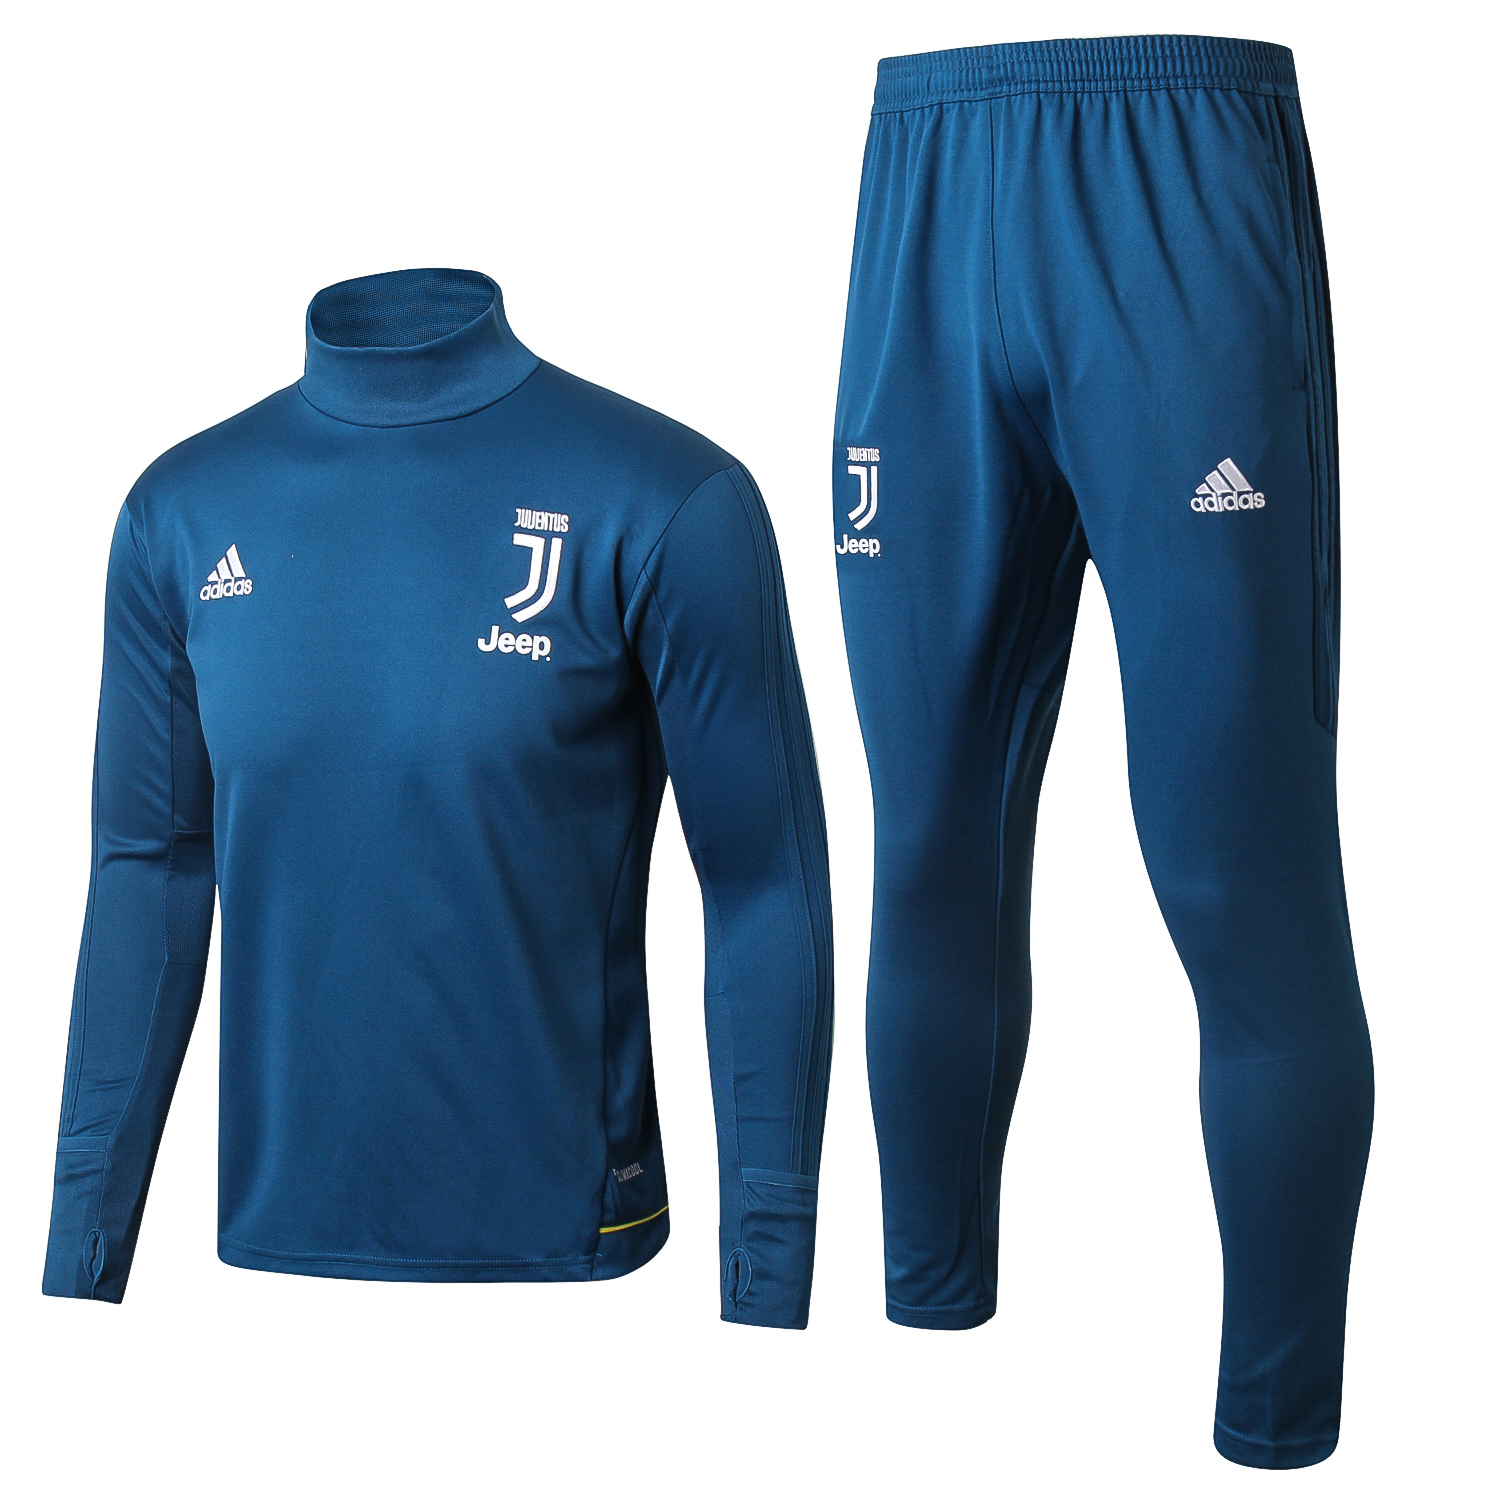 Chandal Juventus 2017-2018 Azul Marino